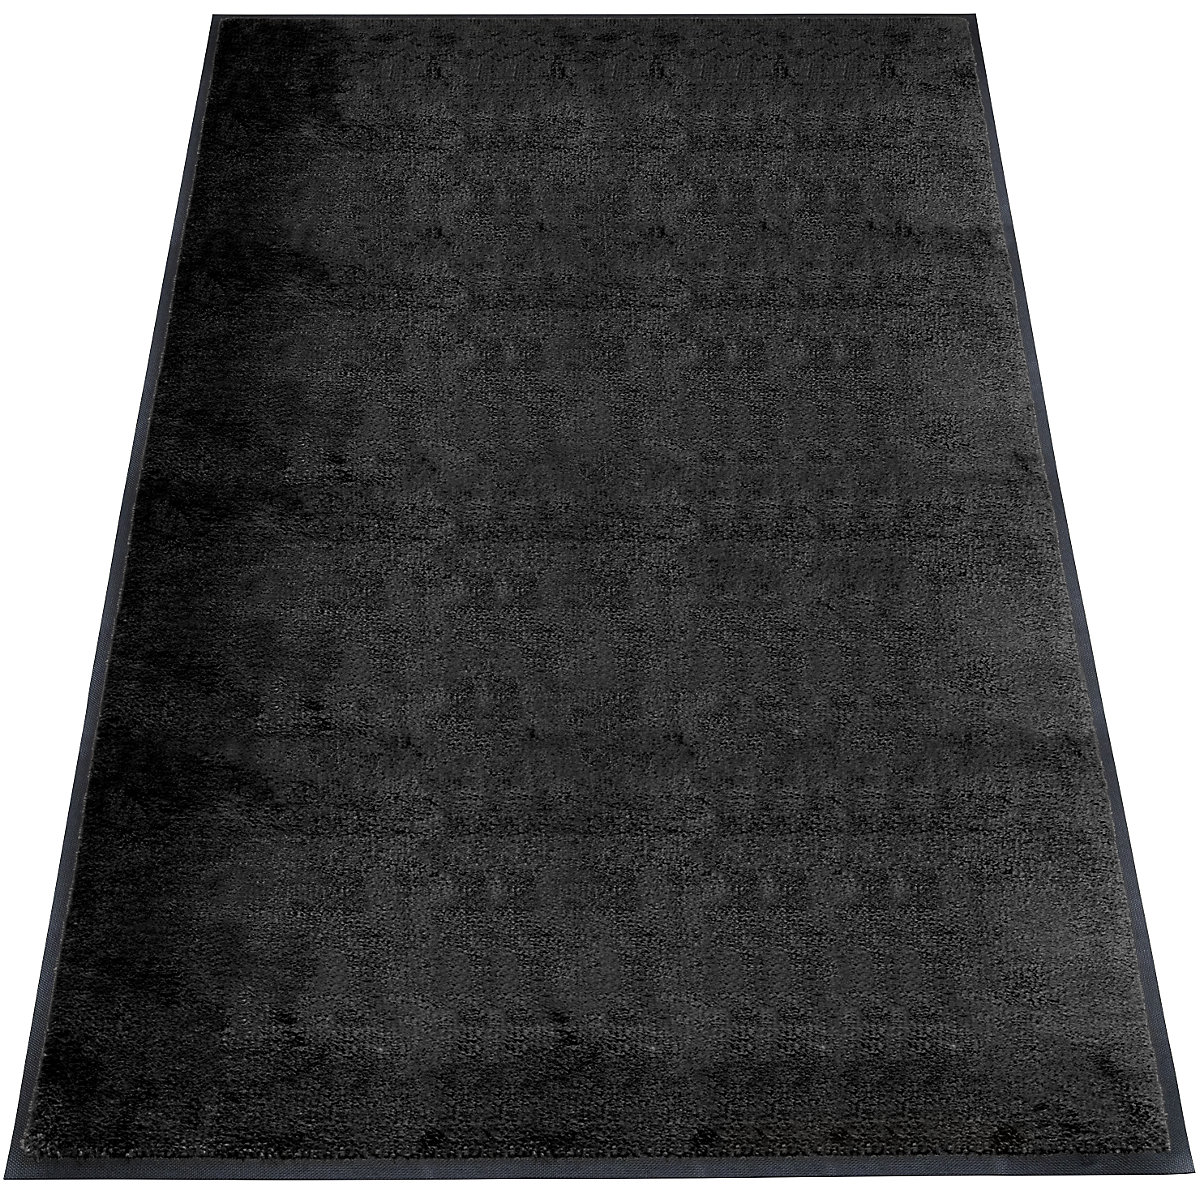 Tapis de propreté EAZYCARE STYLE, L x l 2000 x 1200 mm, noir profond